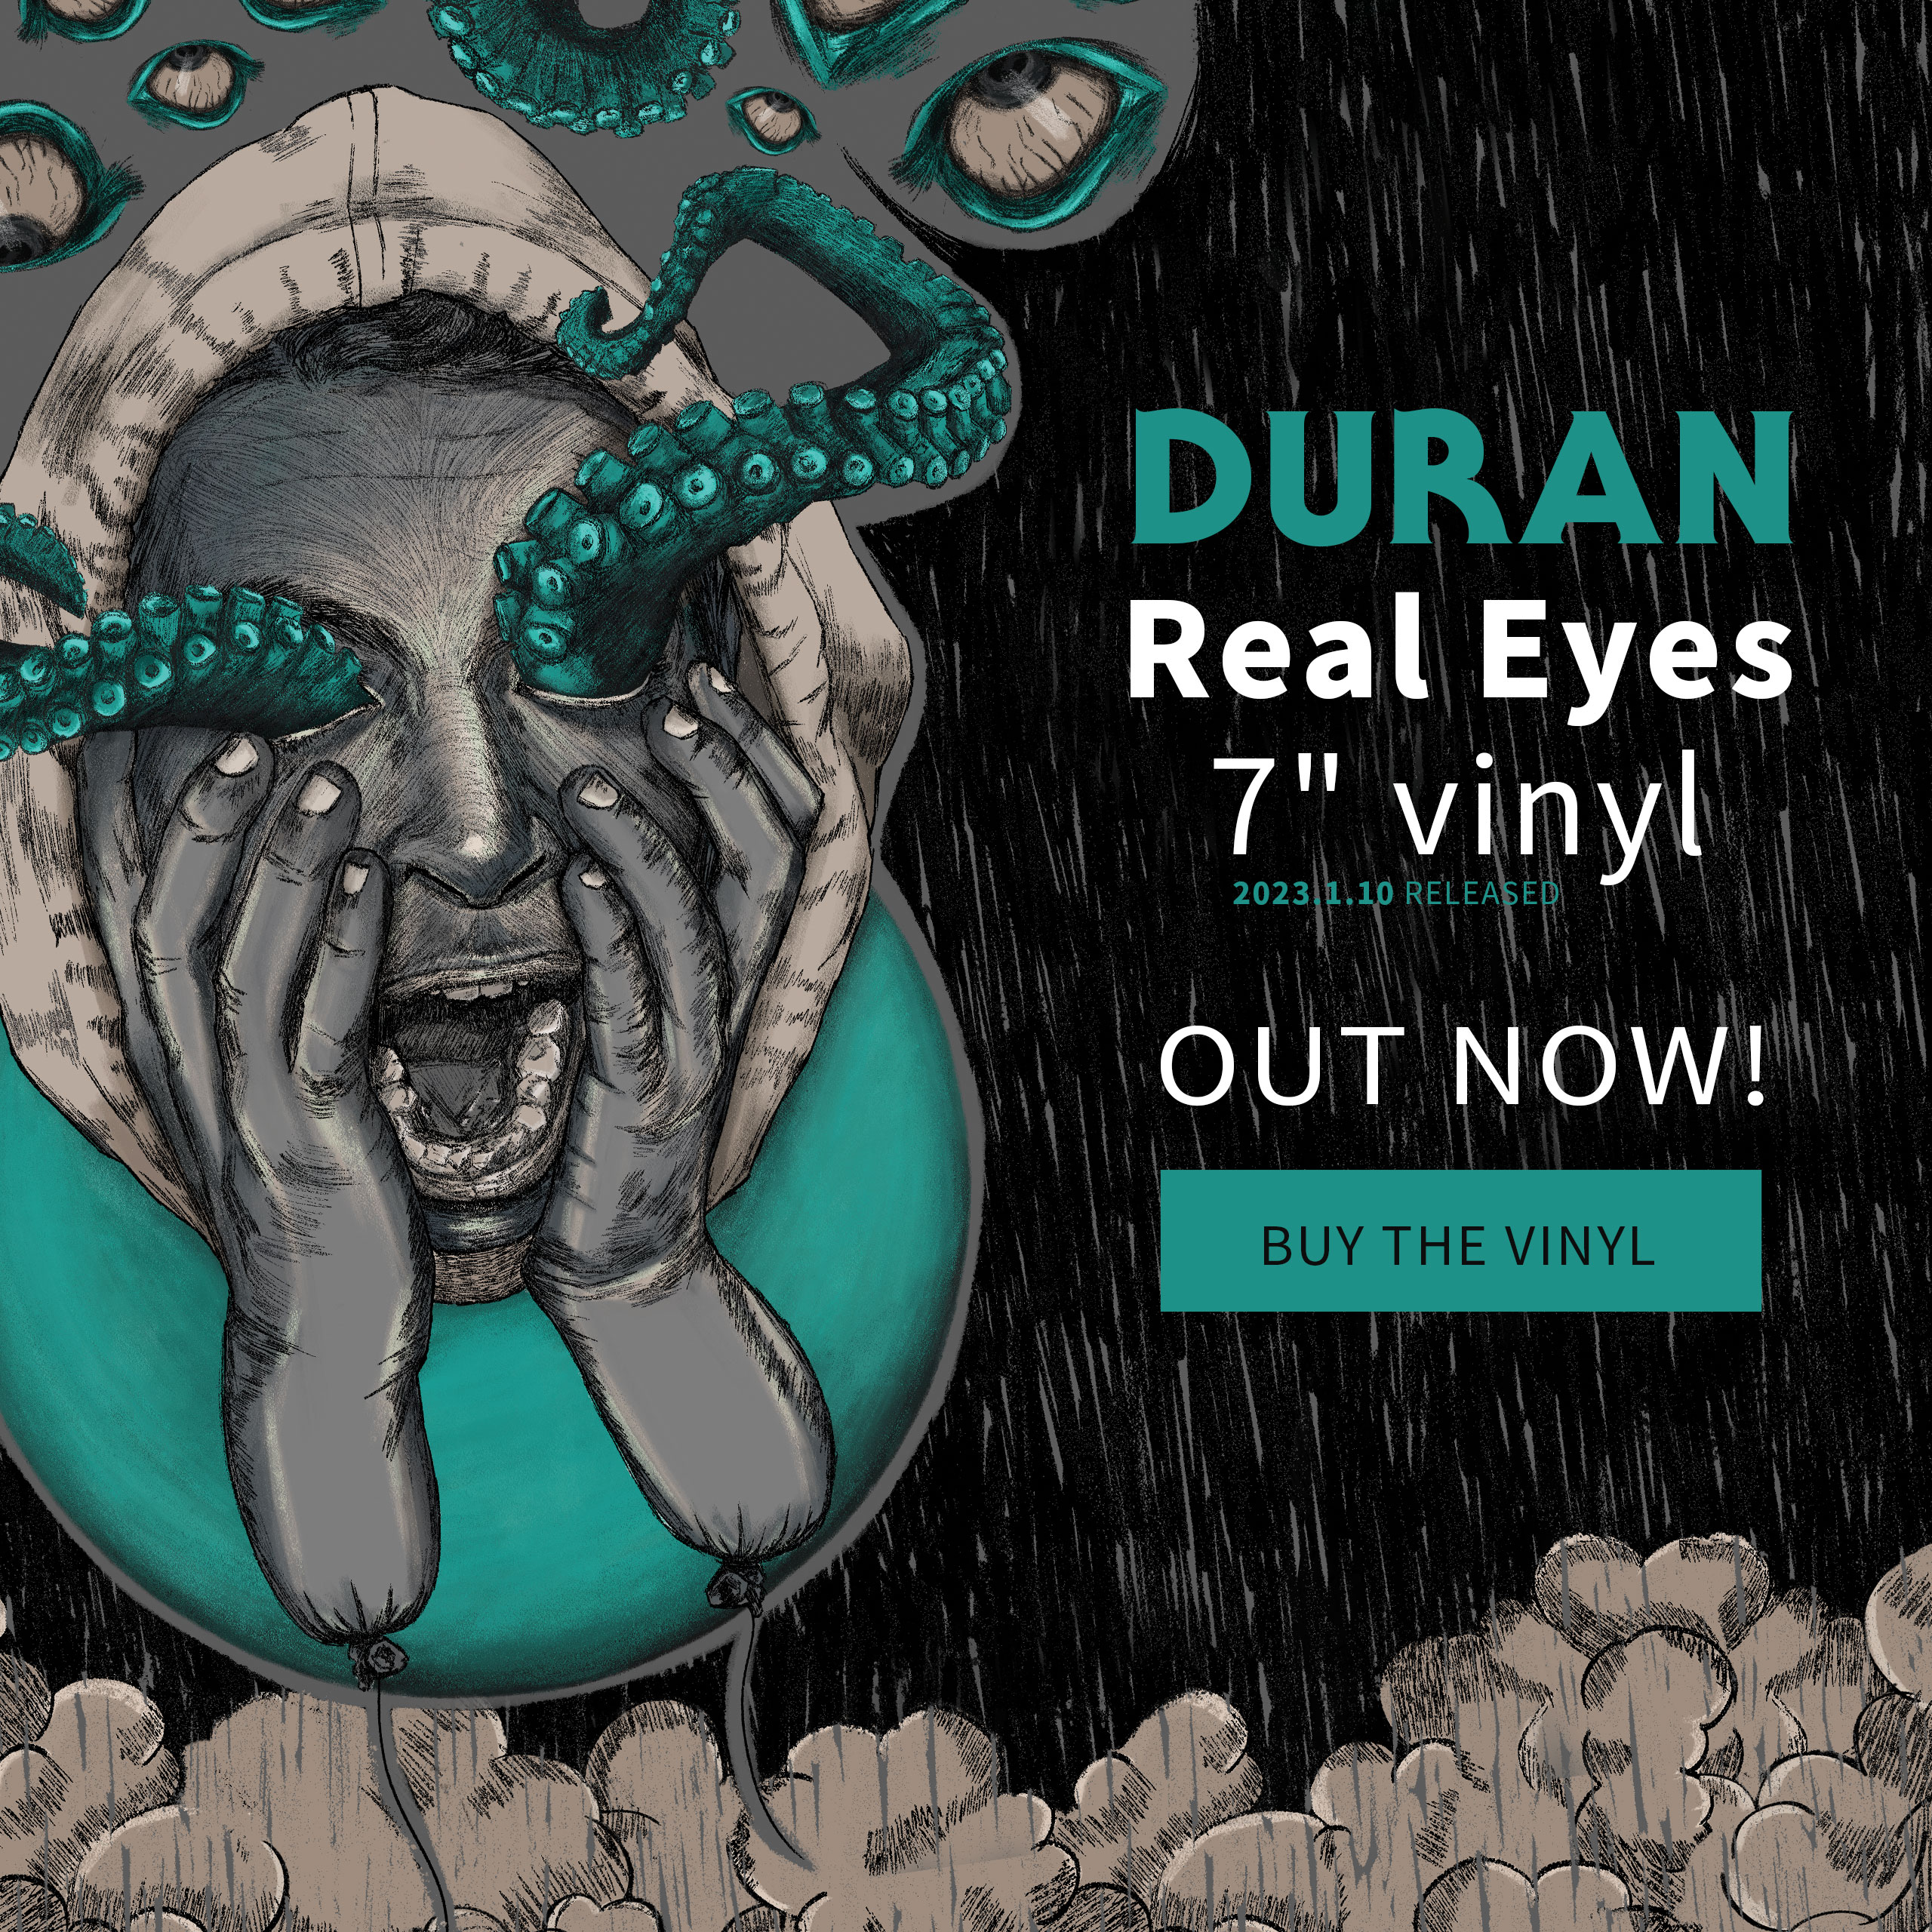 DURAN Real Eyes 7" vinyl